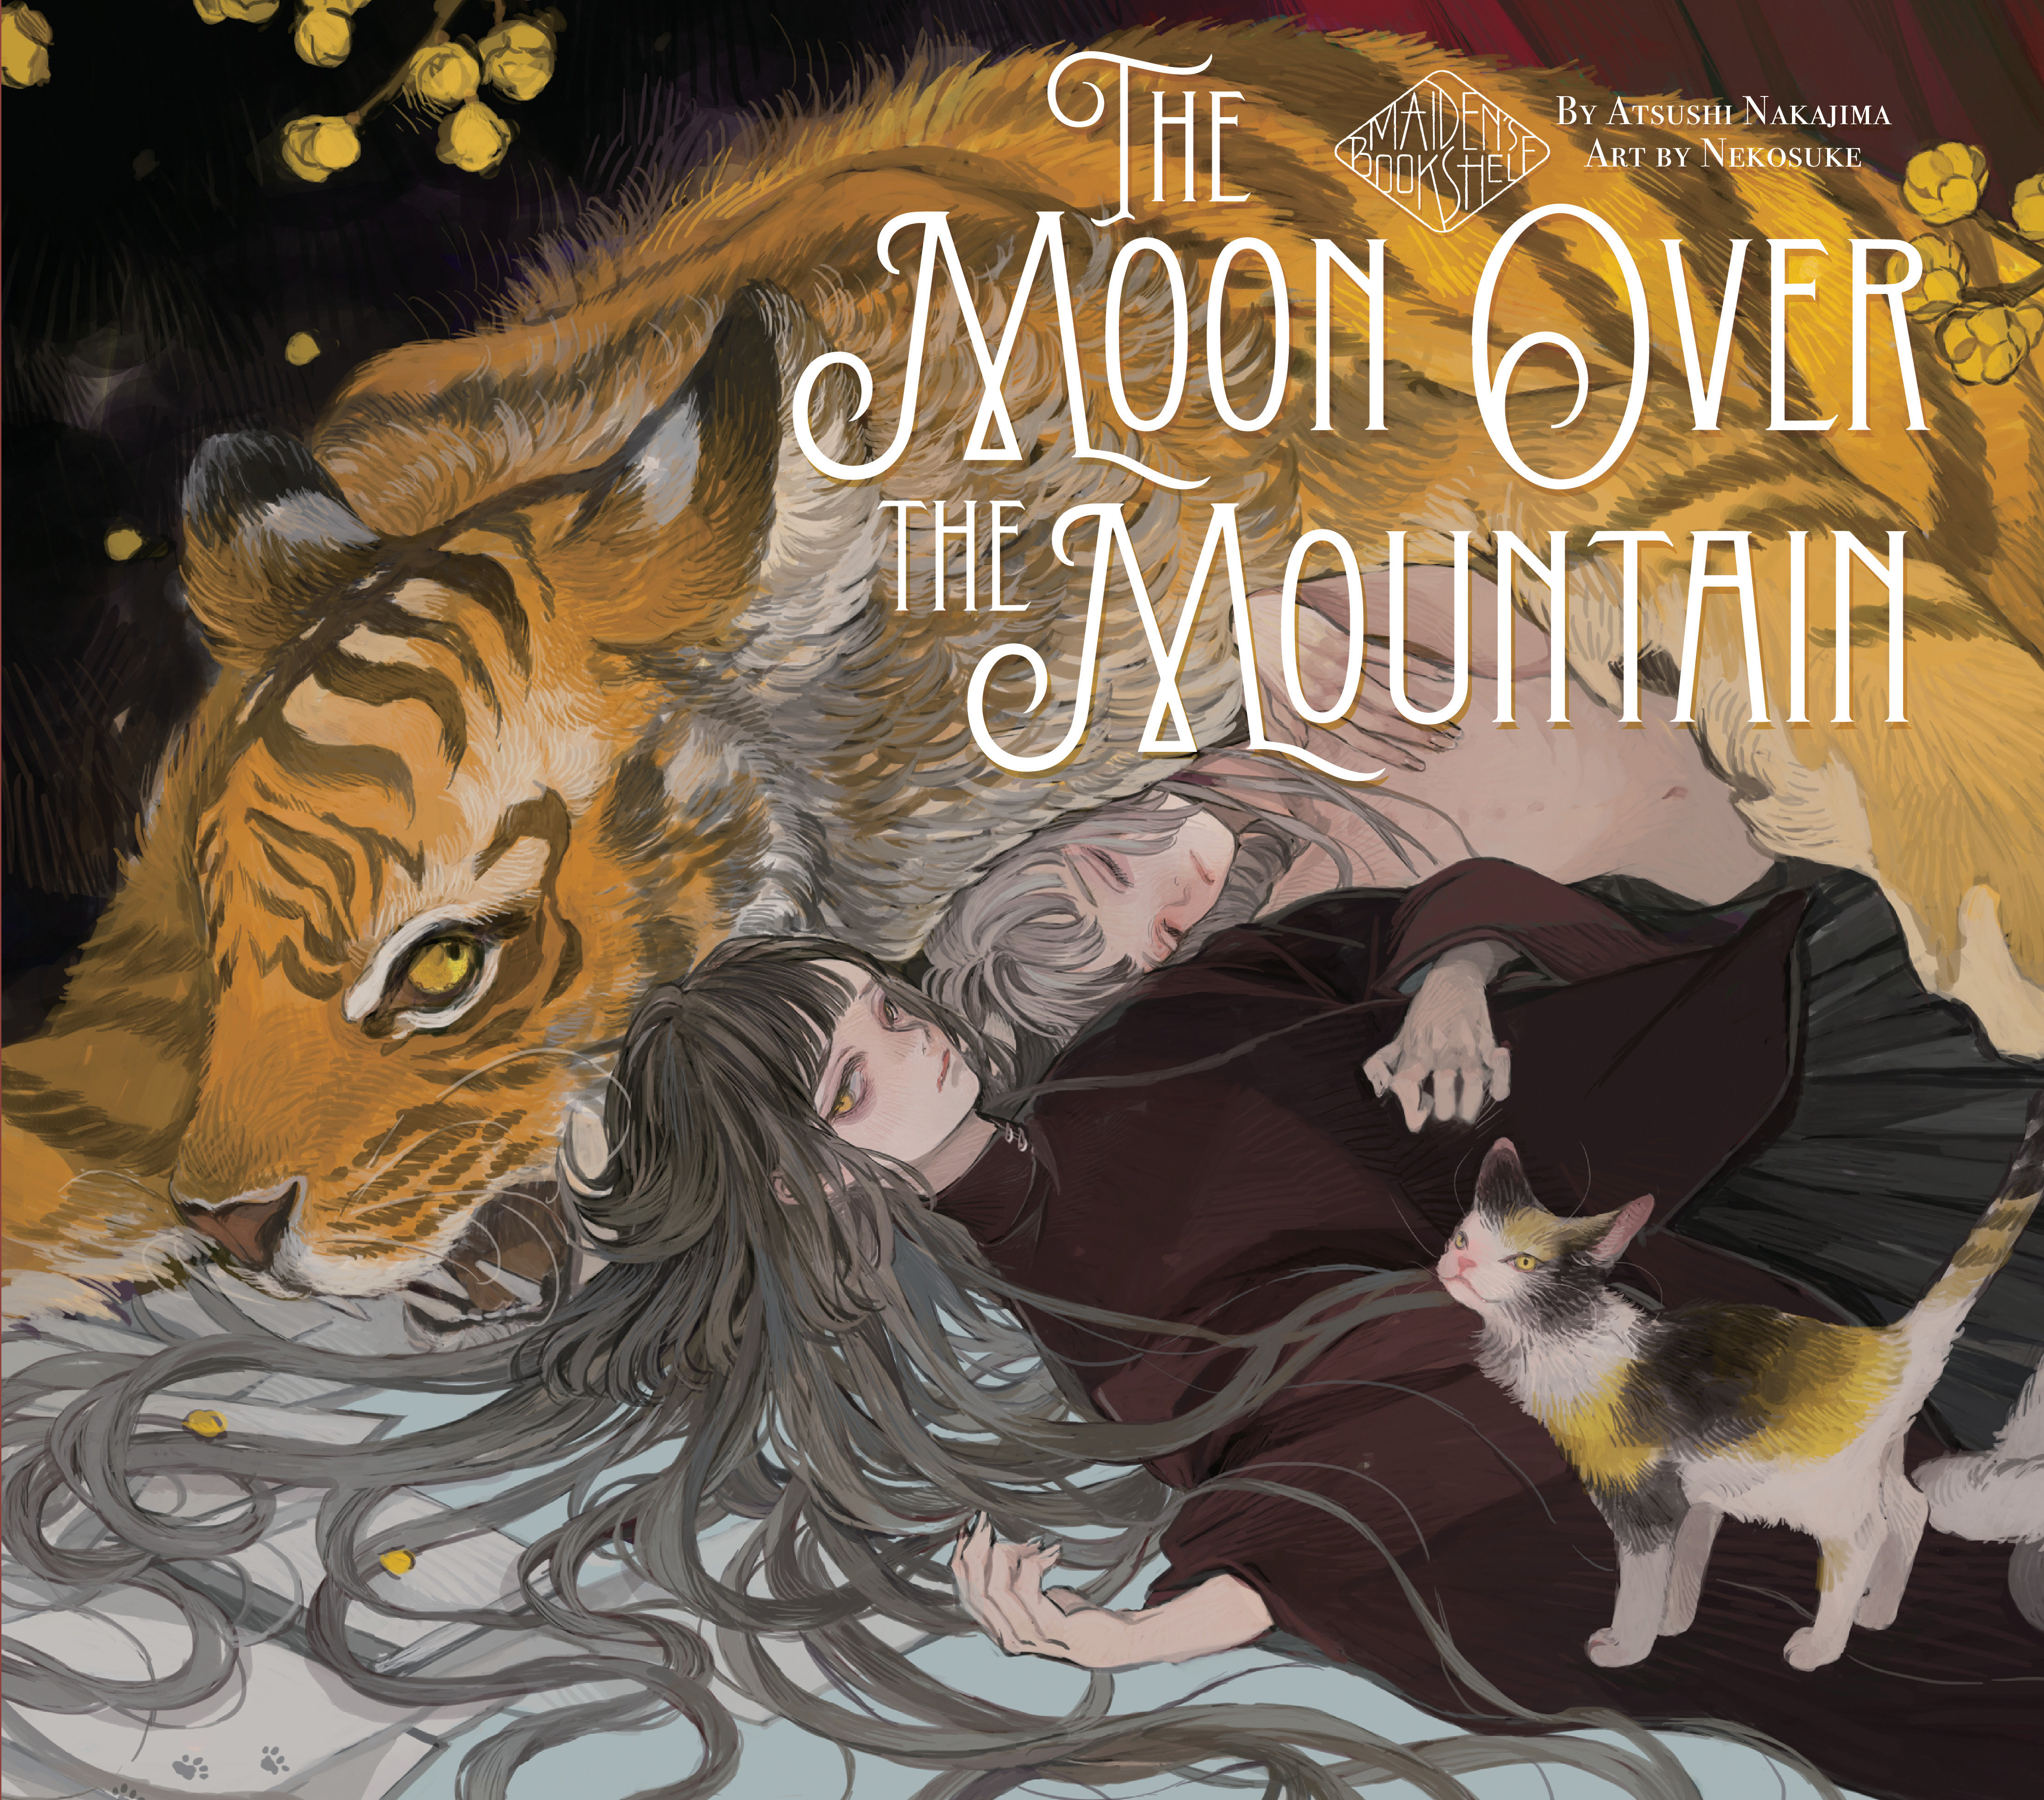 Maiden's Bookshelf Volume 2 The Moon Over the Mountain